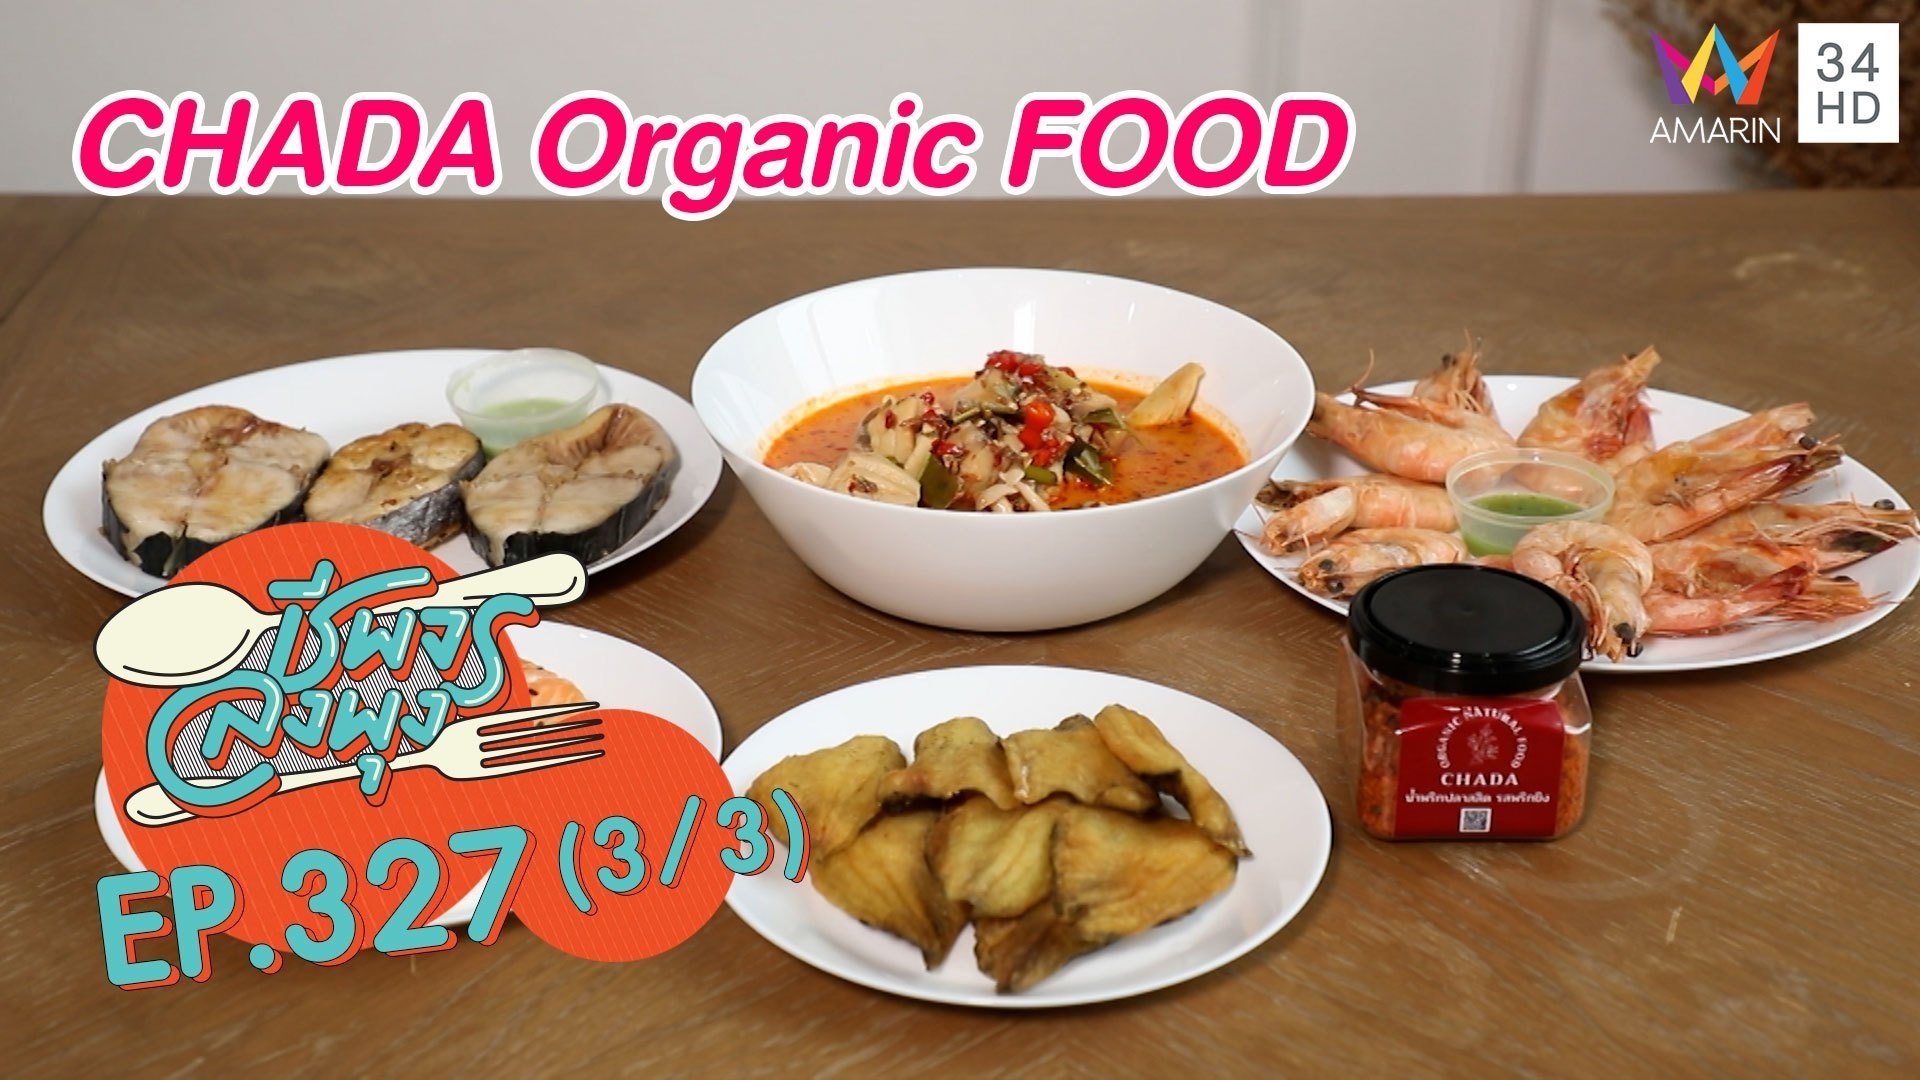 เอาใจสายสุขภาพ @ร้านCHADA Organic FOOD | ชีพจรลงพุง | 25 ก.ย. 64 (3/3) | AMARIN TVHD34